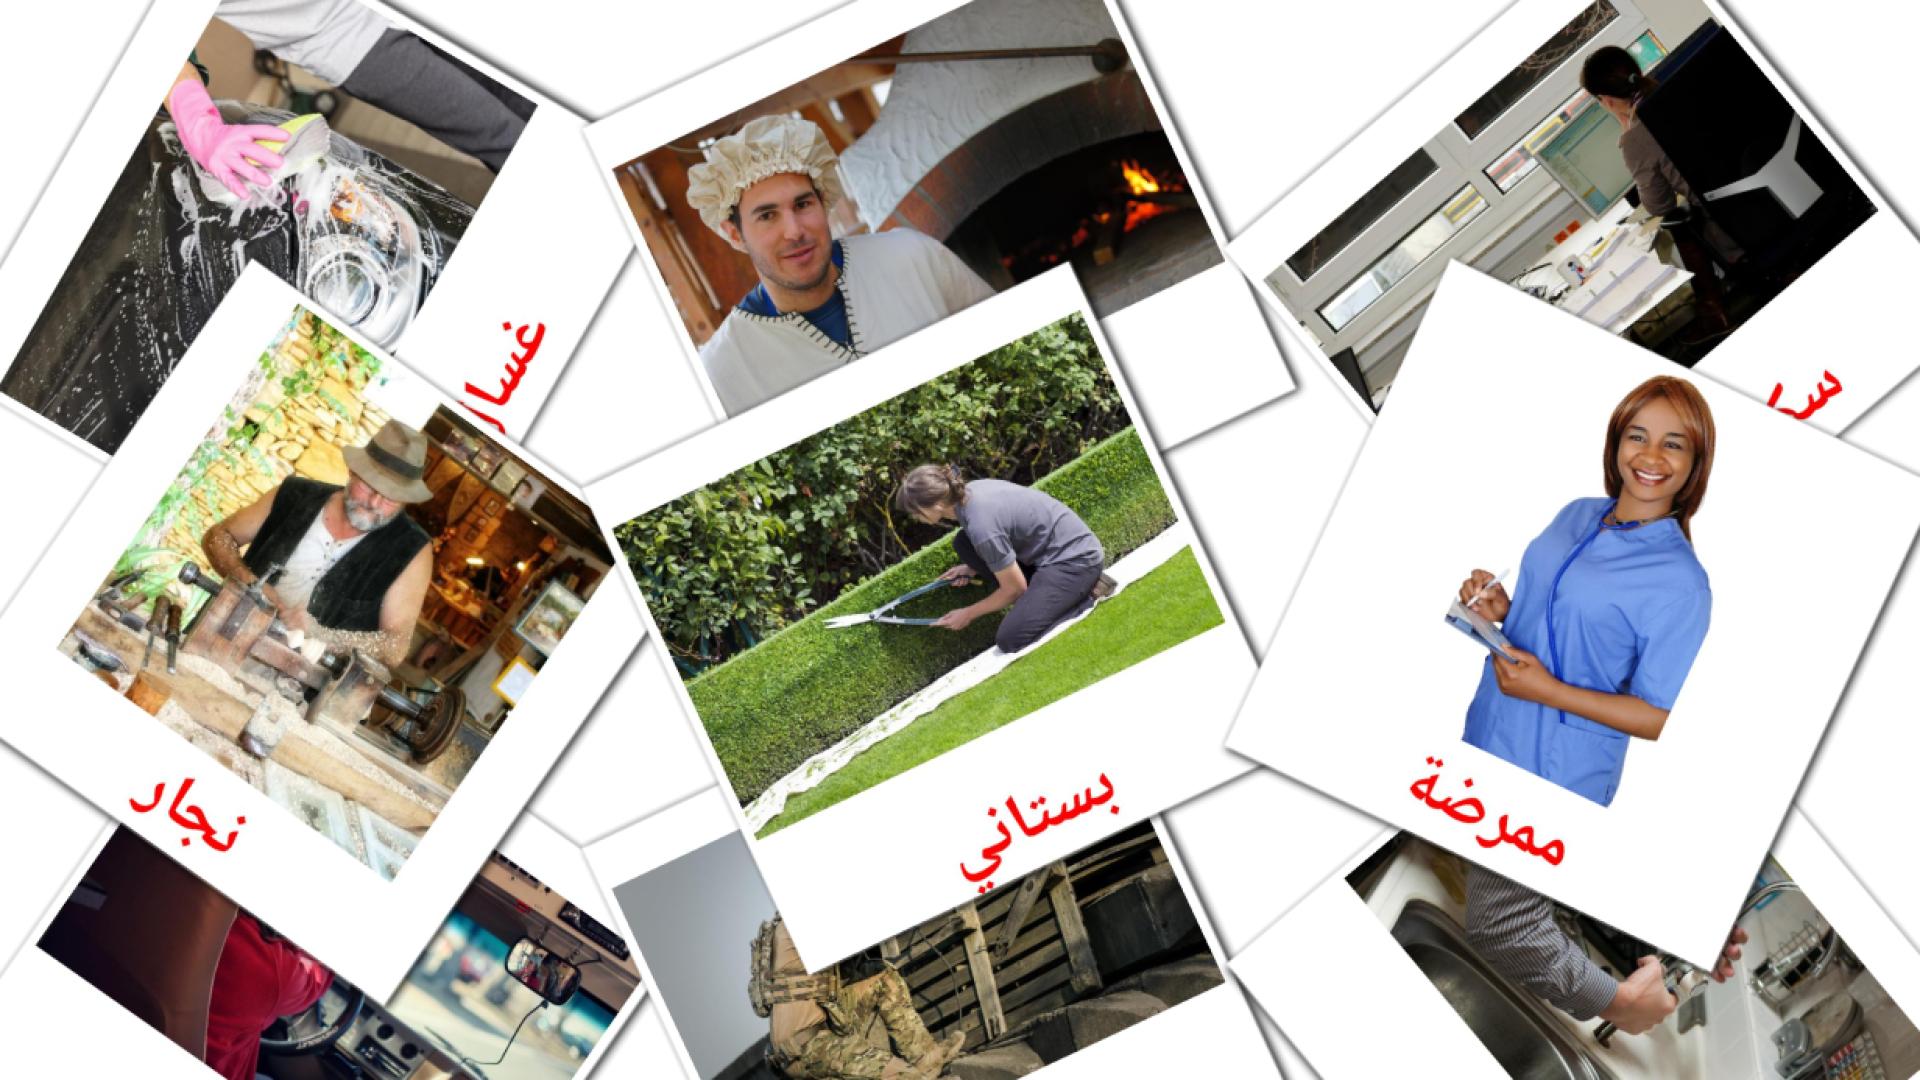 Empregos e ocupações - Cartões de vocabulário árabe